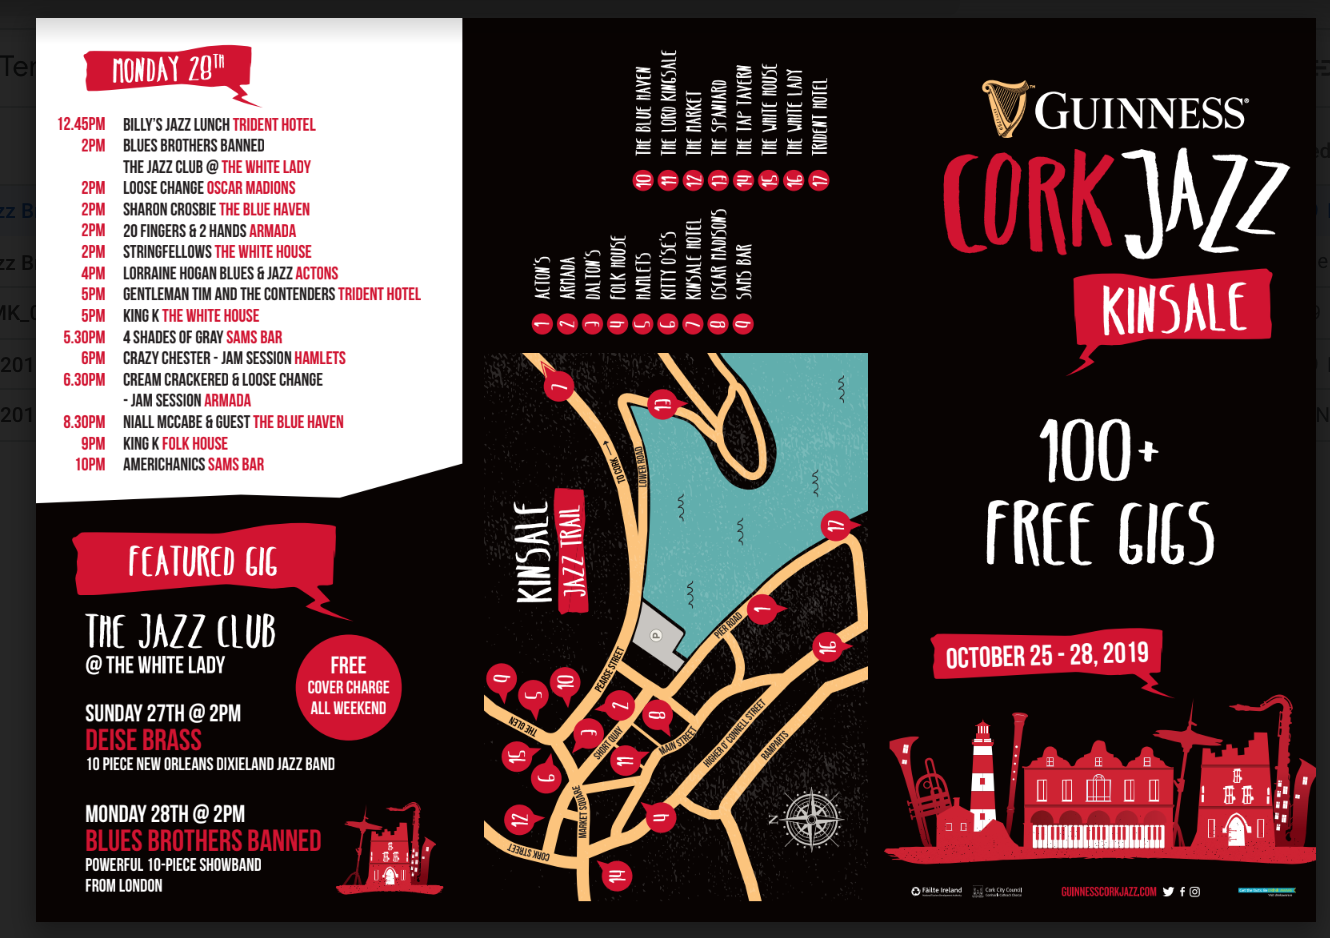 Guinness Kinsale Jazz ‘Fringe’ Festival. Over 100 free gigs.